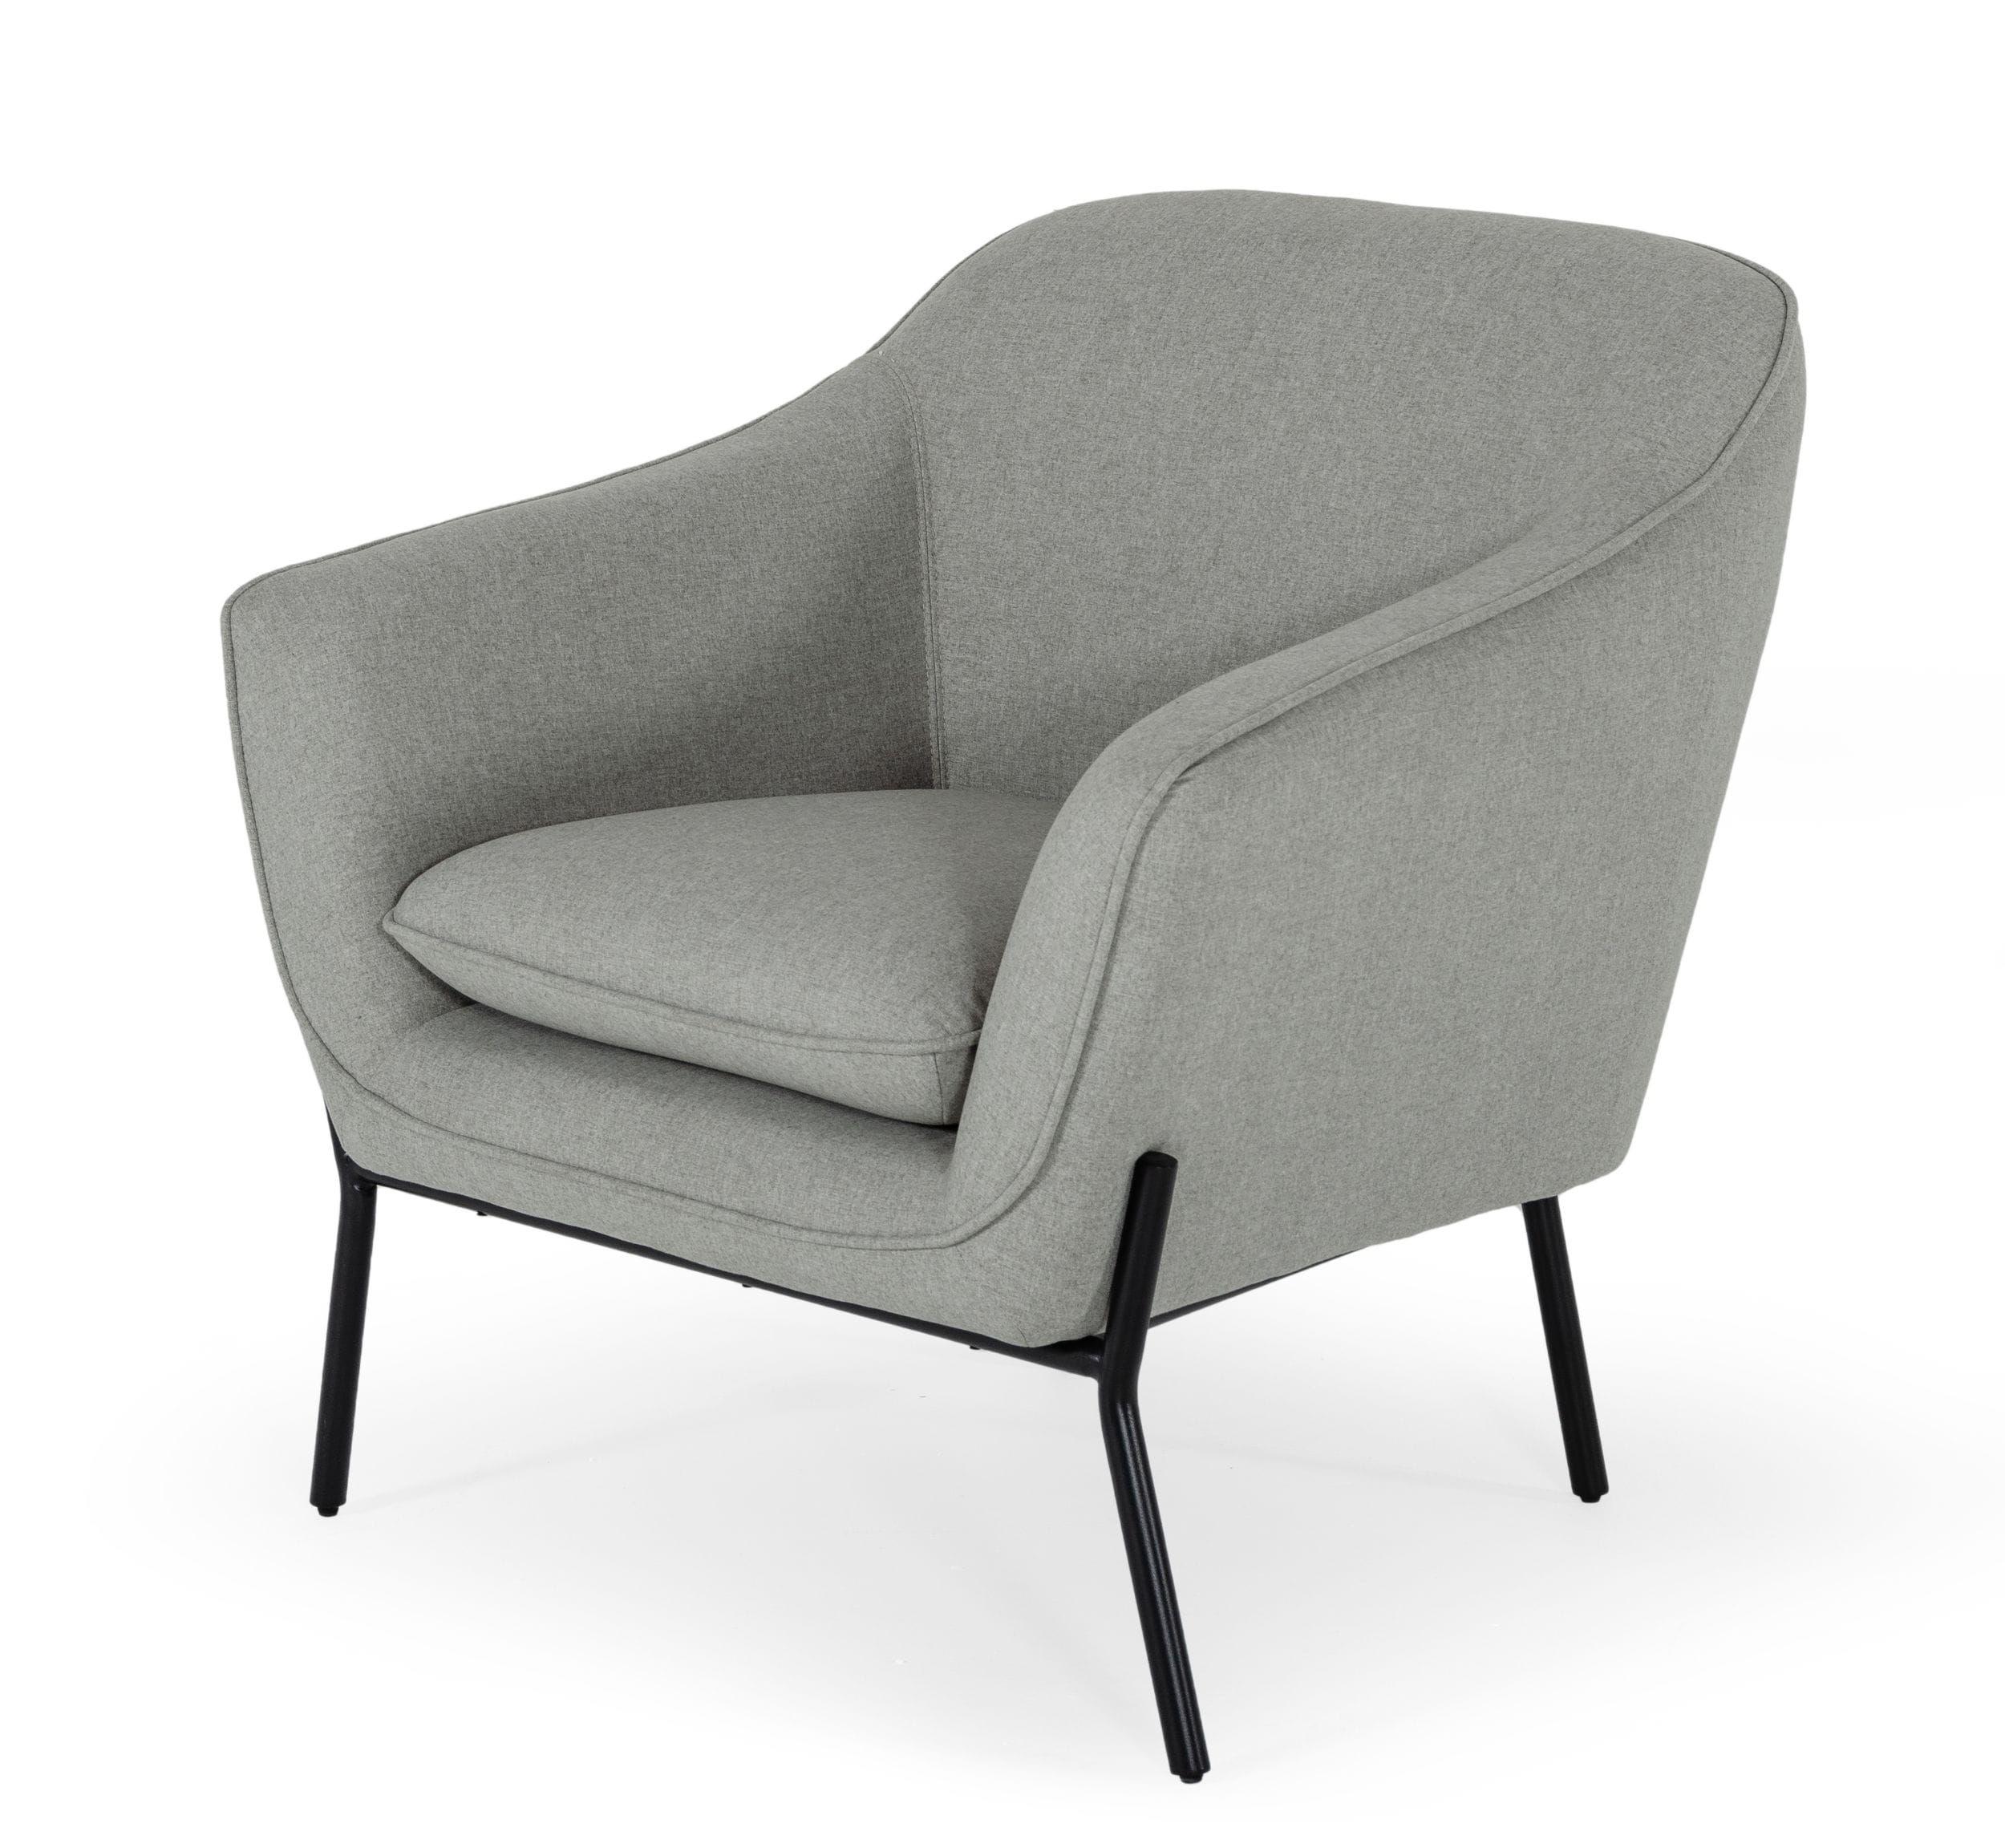 

    
Light Grey Velvet Armchair Set 2Pcs Modrest Joiner VIG Modern Contemporary
